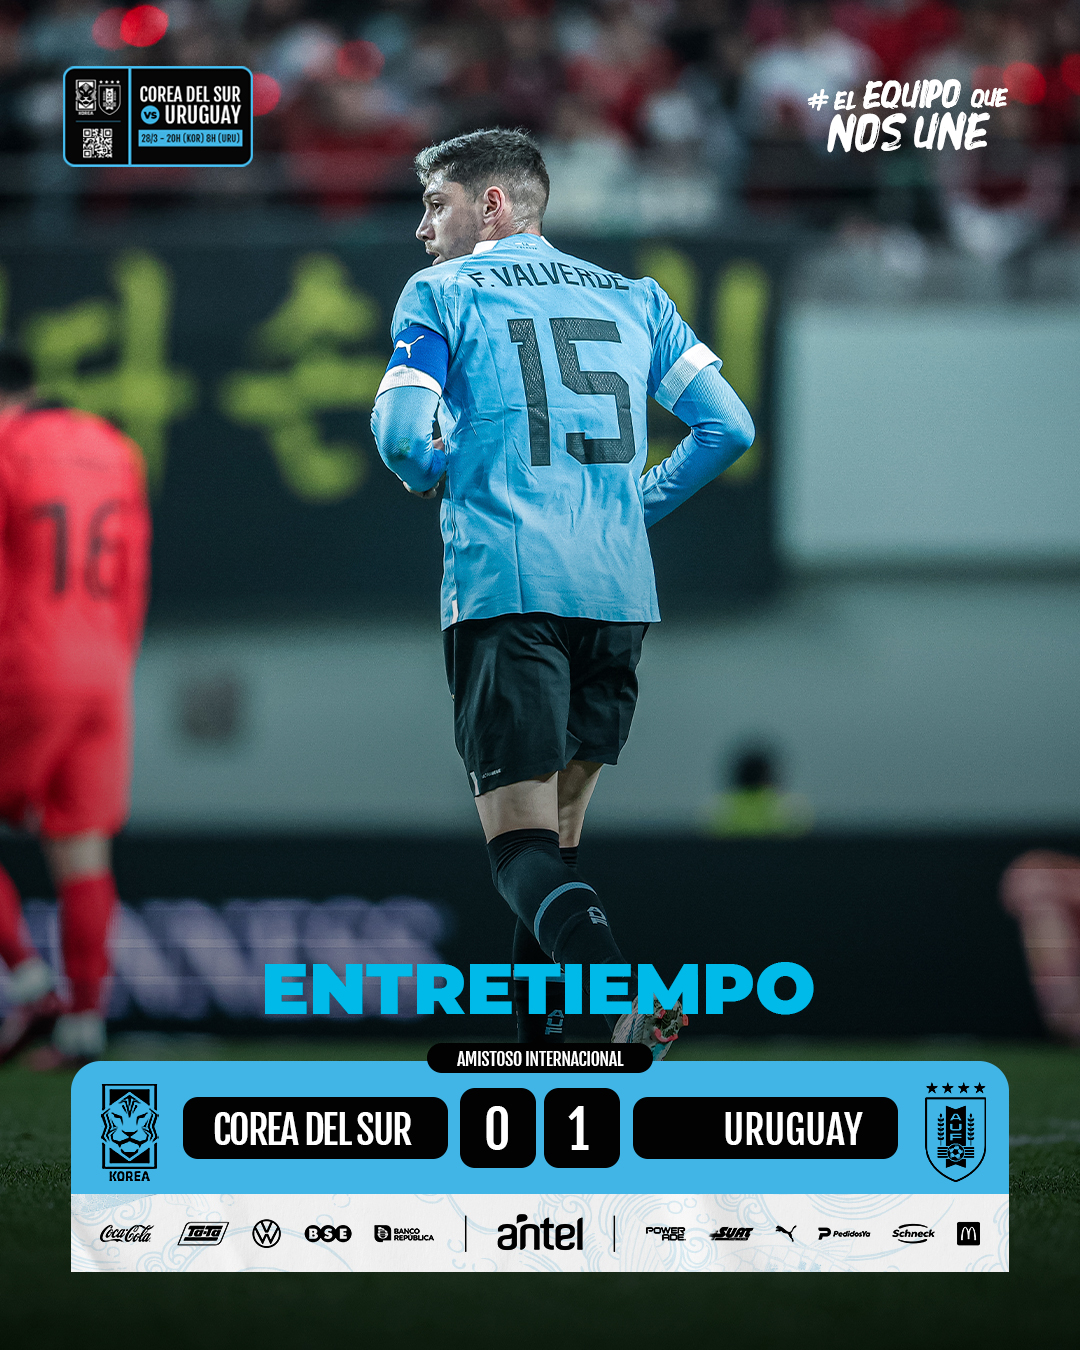 AUF - Selección Uruguaya de Fútbol - ⏸️ 𝙁𝙄𝙉𝘼𝙇 𝘿𝙀𝙇